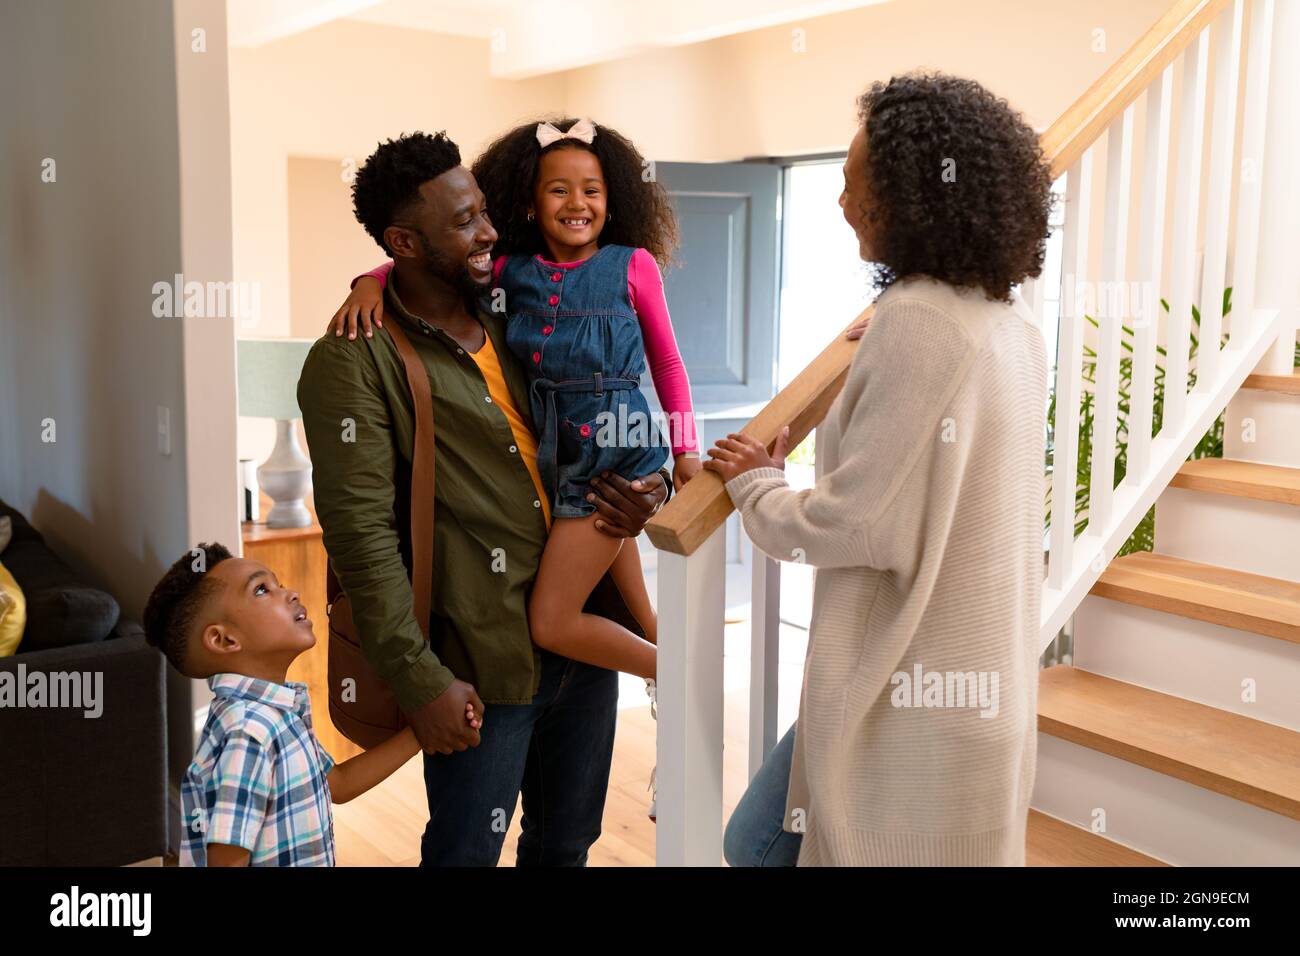 Une famille afro-américaine heureuse accueille son père qui rentre chez lui Banque D'Images